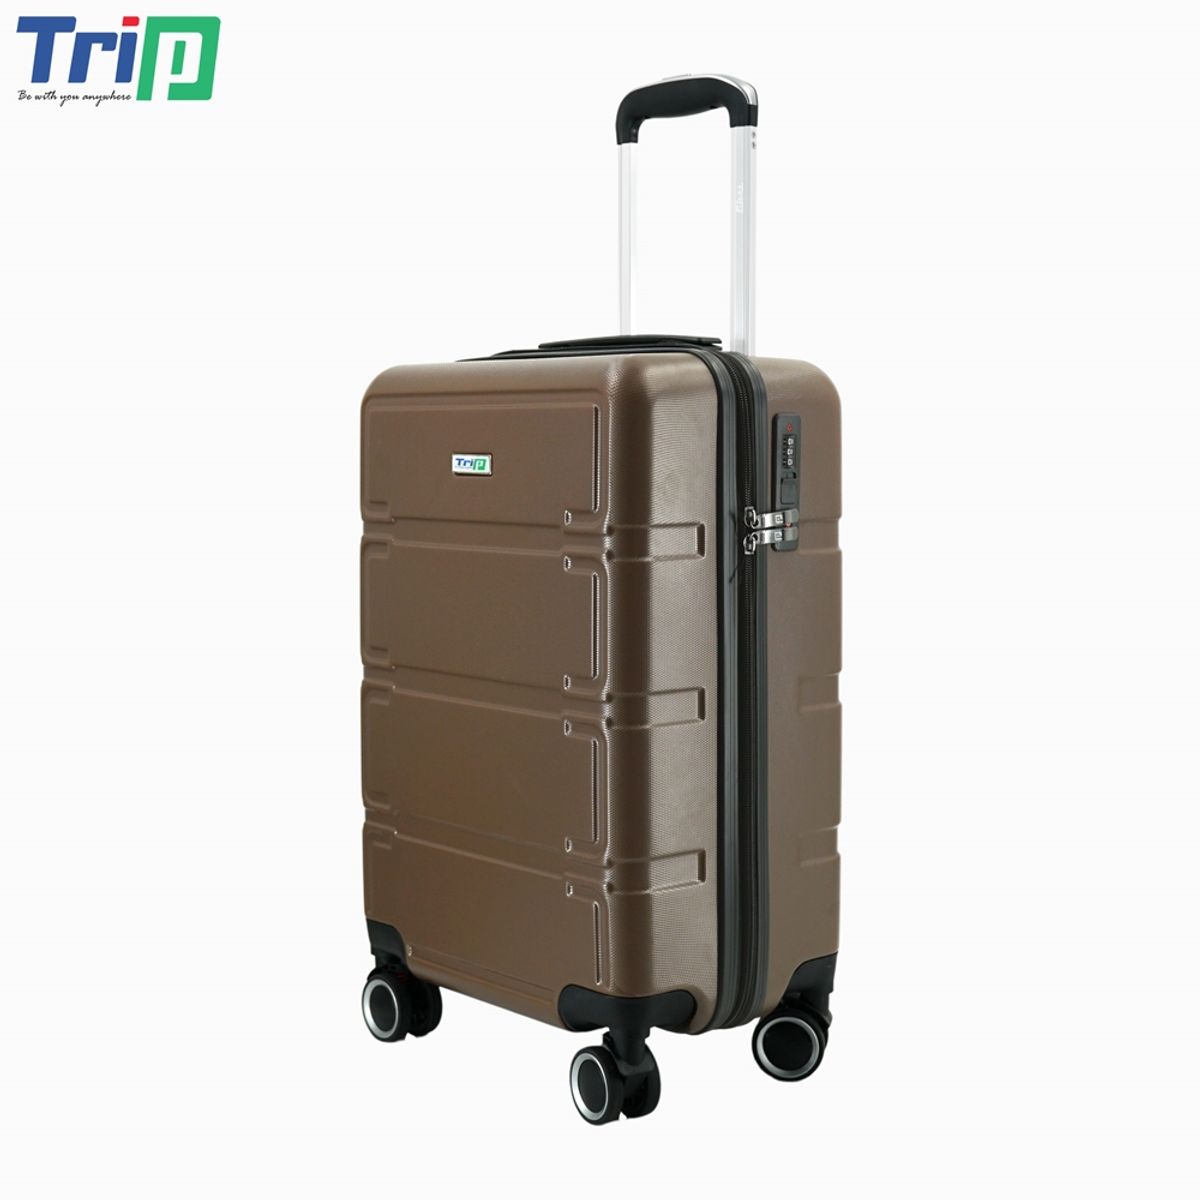 vali nhựa trip p806 size 24 inch, có khóa bảo mật, bảo hành 5 năm - freeship 3